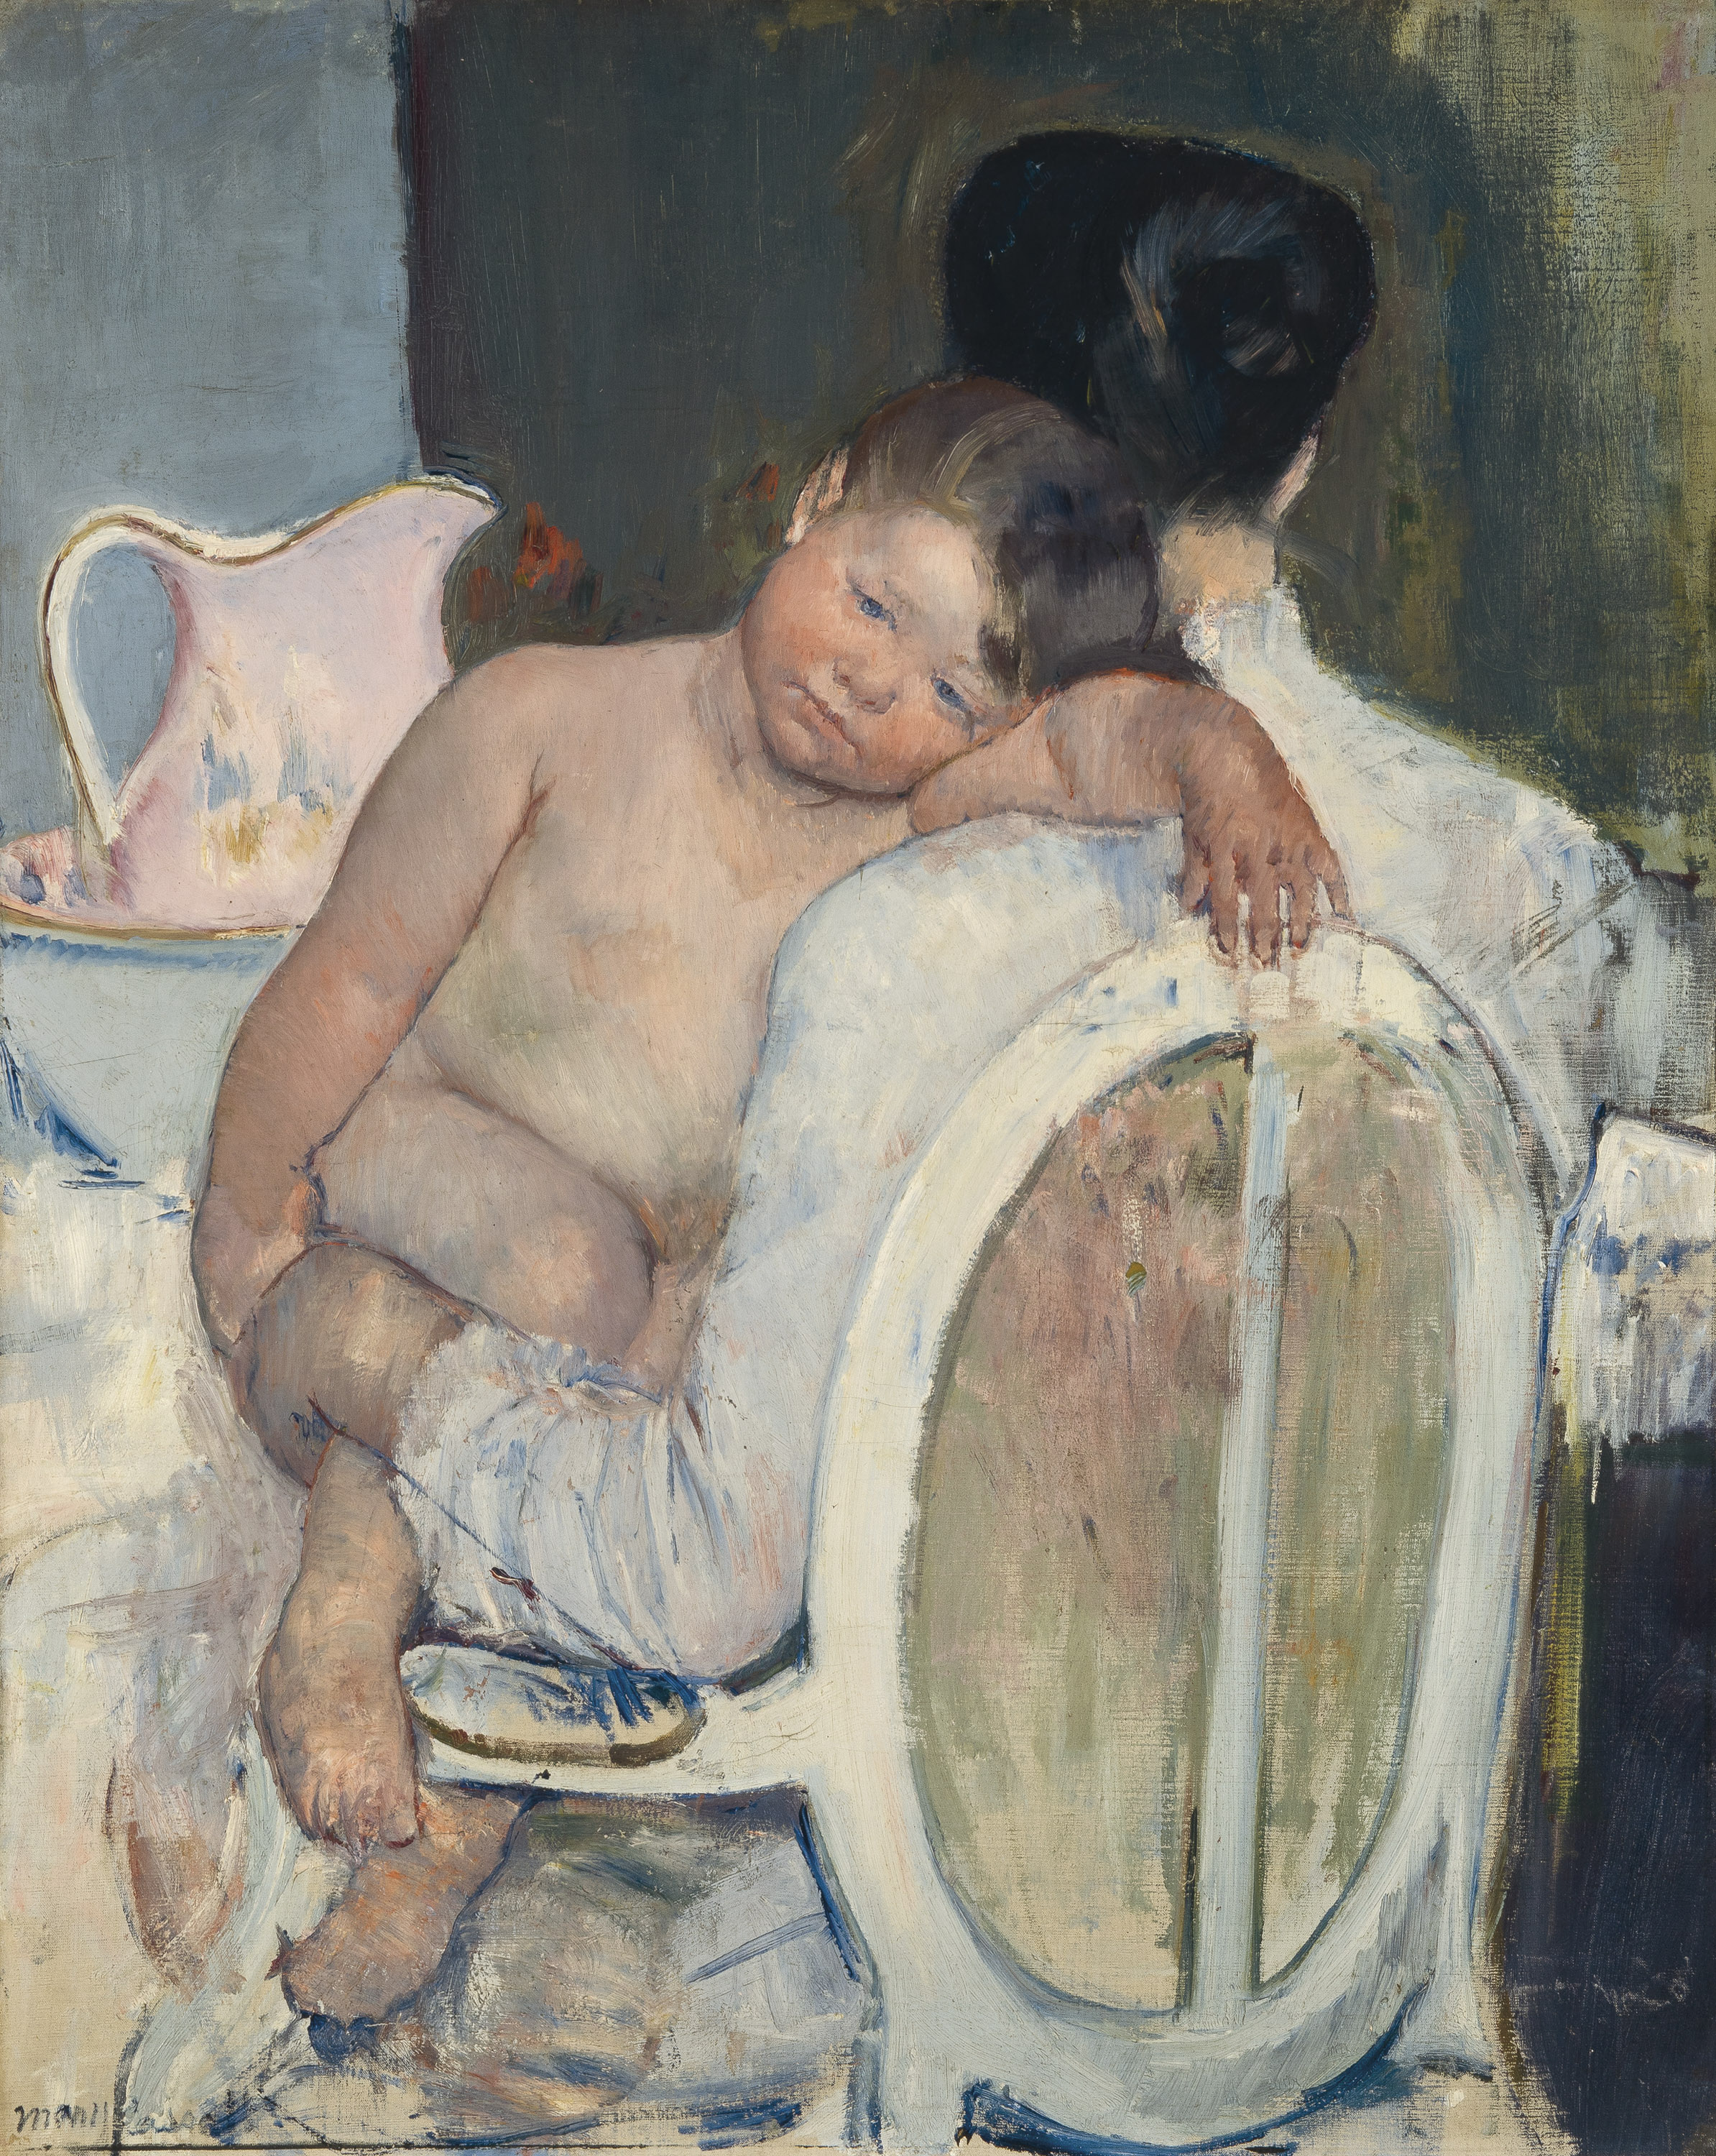 Mujer sentada con un niño en brazos